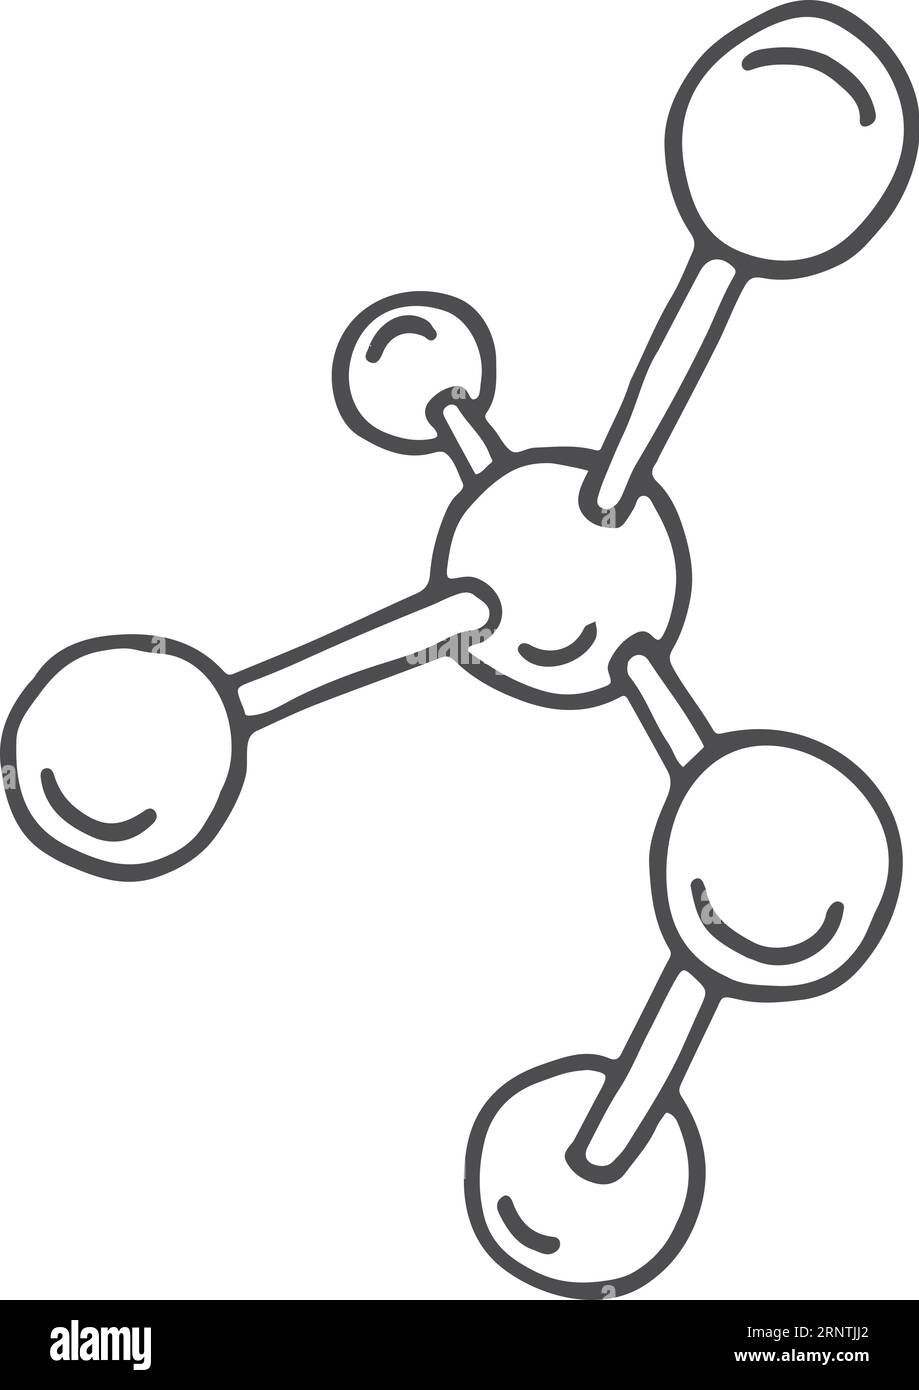 Icône de modèle de molécule chimique. Doodle d'étude scientifique Illustration de Vecteur